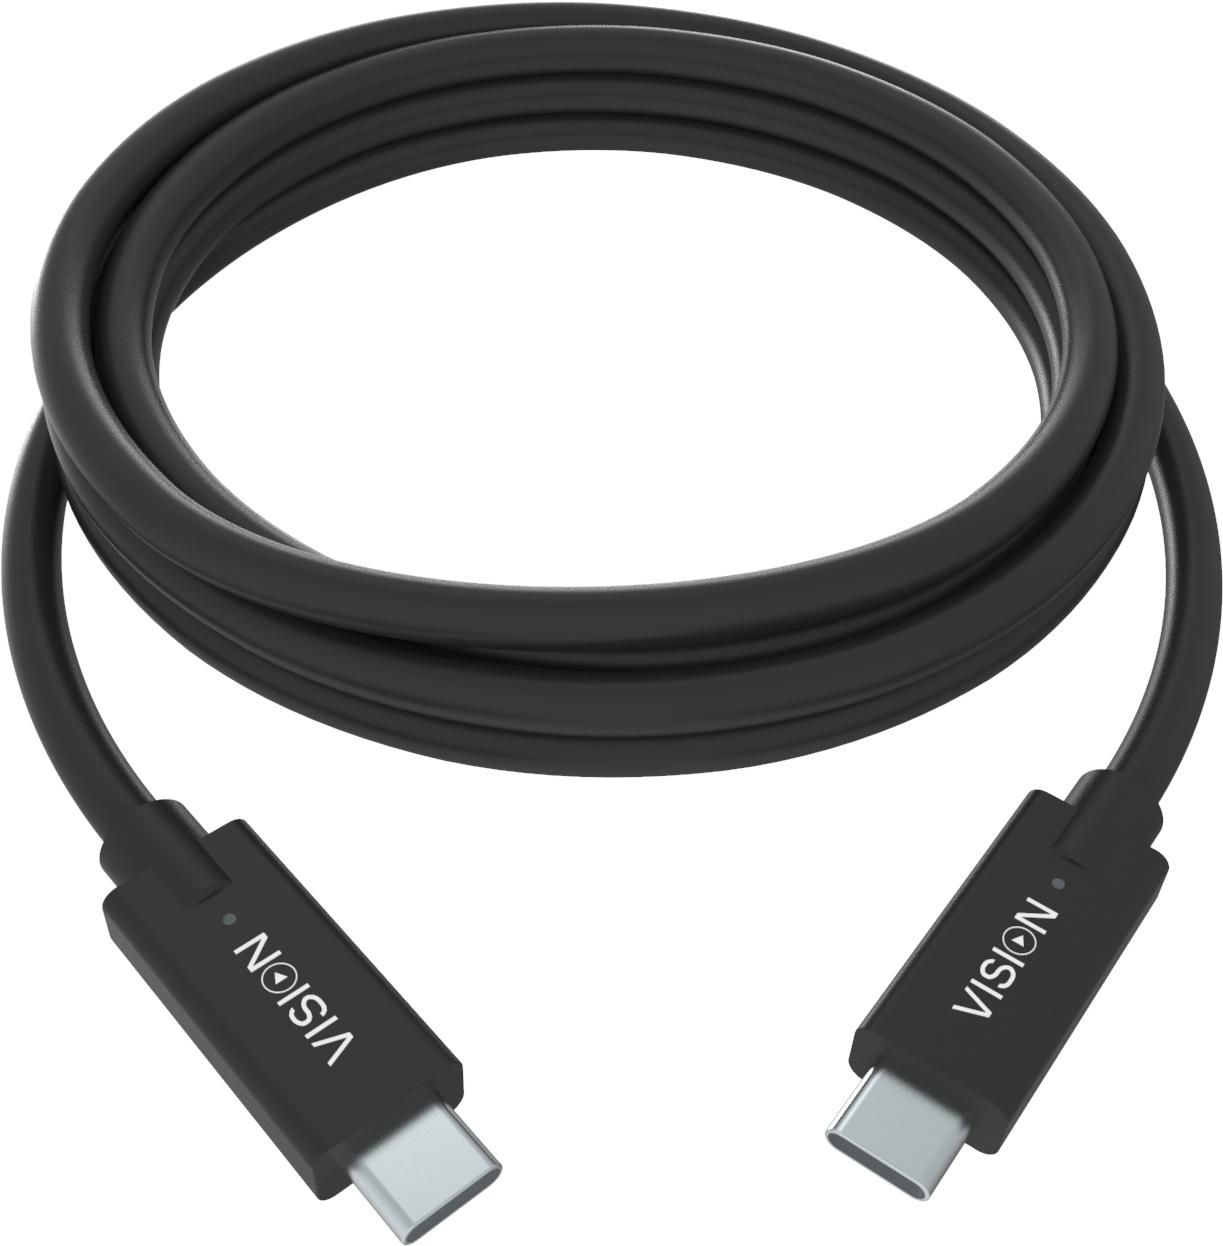 VISION Professional installationstaugliches USB-C-Kabel  30 JAHRE GARANTIE  Bandbreite bis zu 10 Gbi